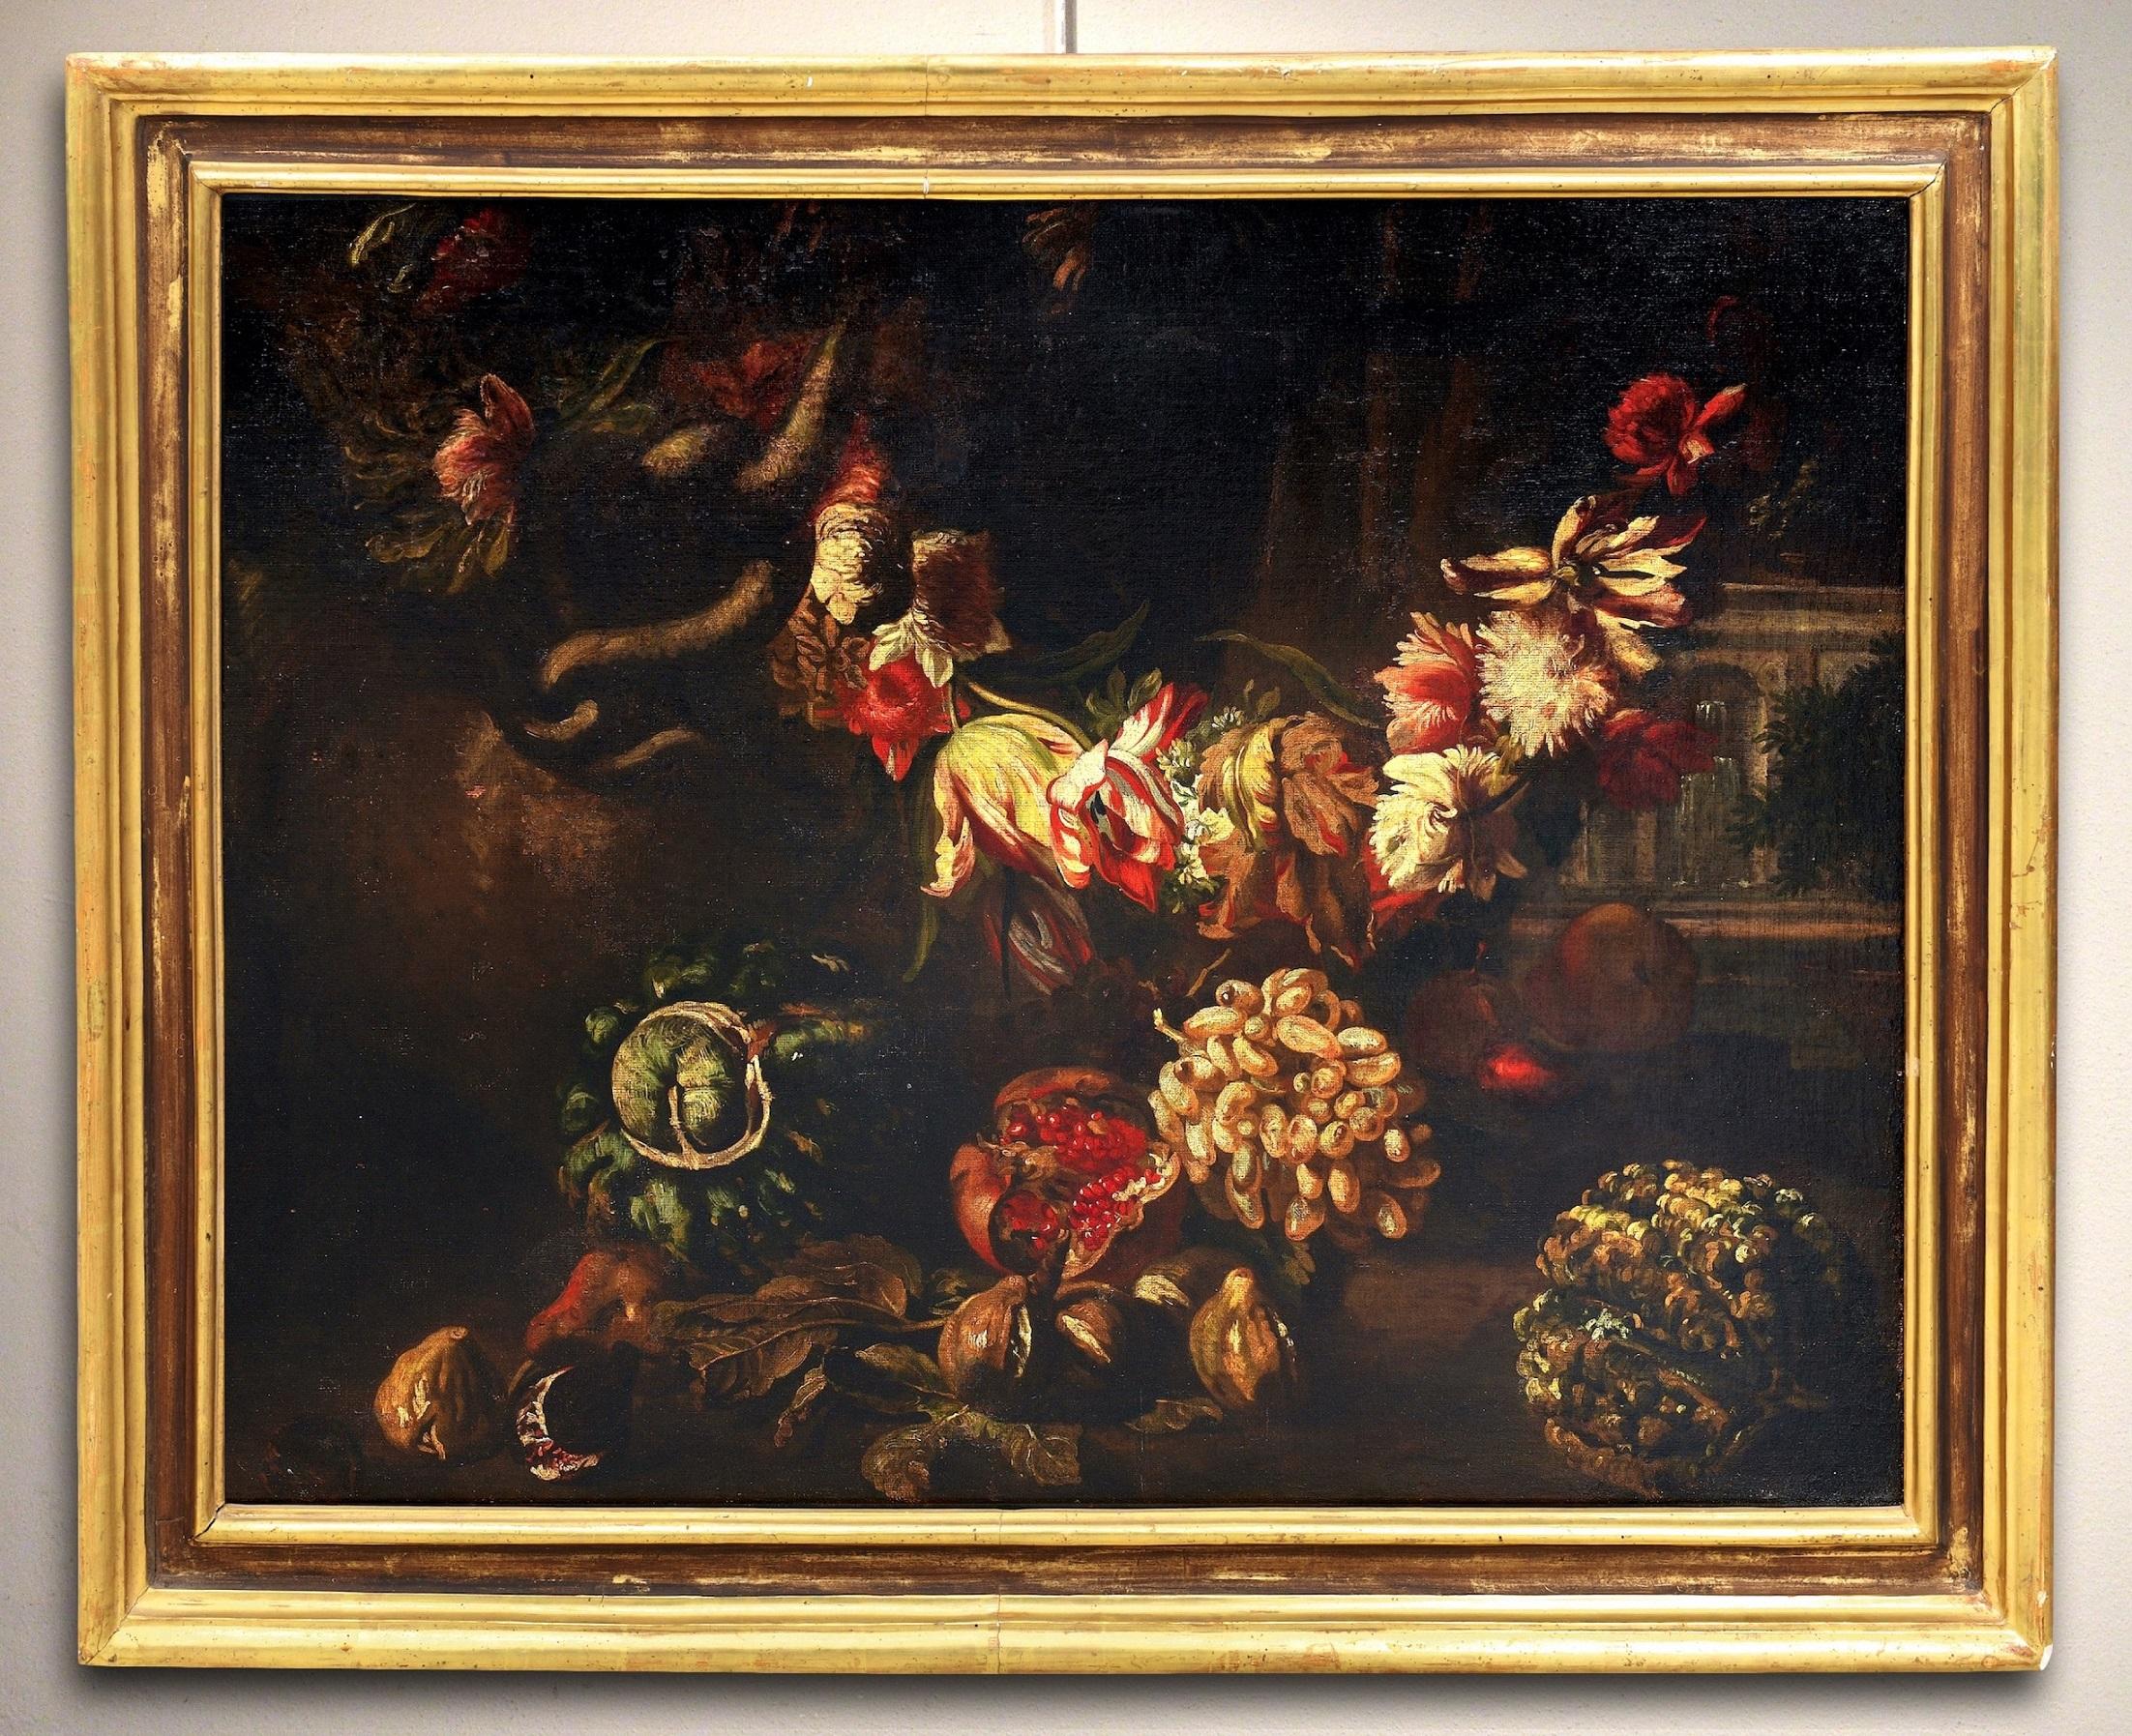 Ascione Stillleben, Öl auf Leinwand, Alter Meister, Barock, 17./18. Jahrhundert, Italien – Painting von Aniello Ascione (Naples, news from 1680 to 1708)